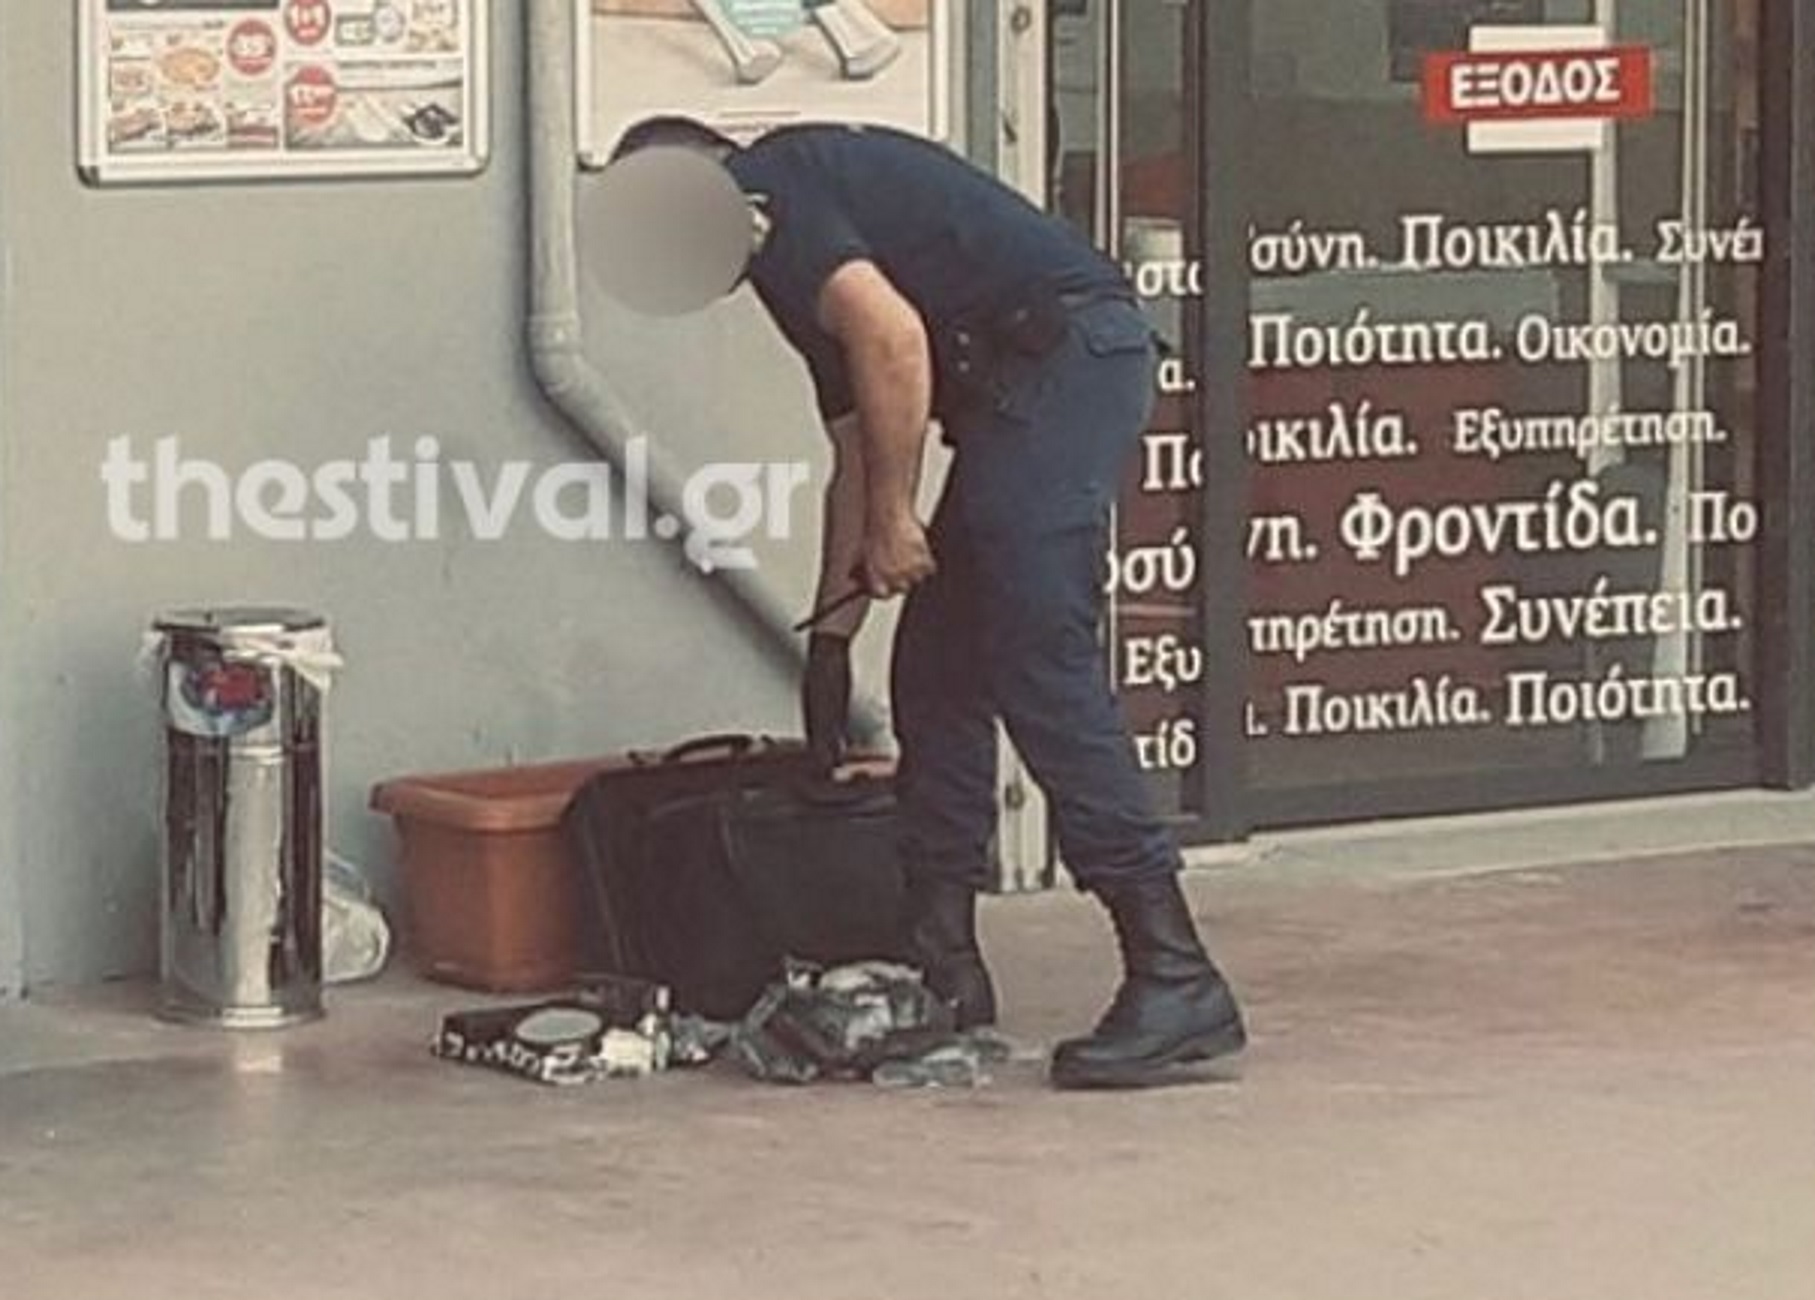 Θεσσαλονίκη: Συνελήφθη για την τσάντα που άφησε έξω από σούπερ μάρκετ! Τι διαπιστώθηκε…